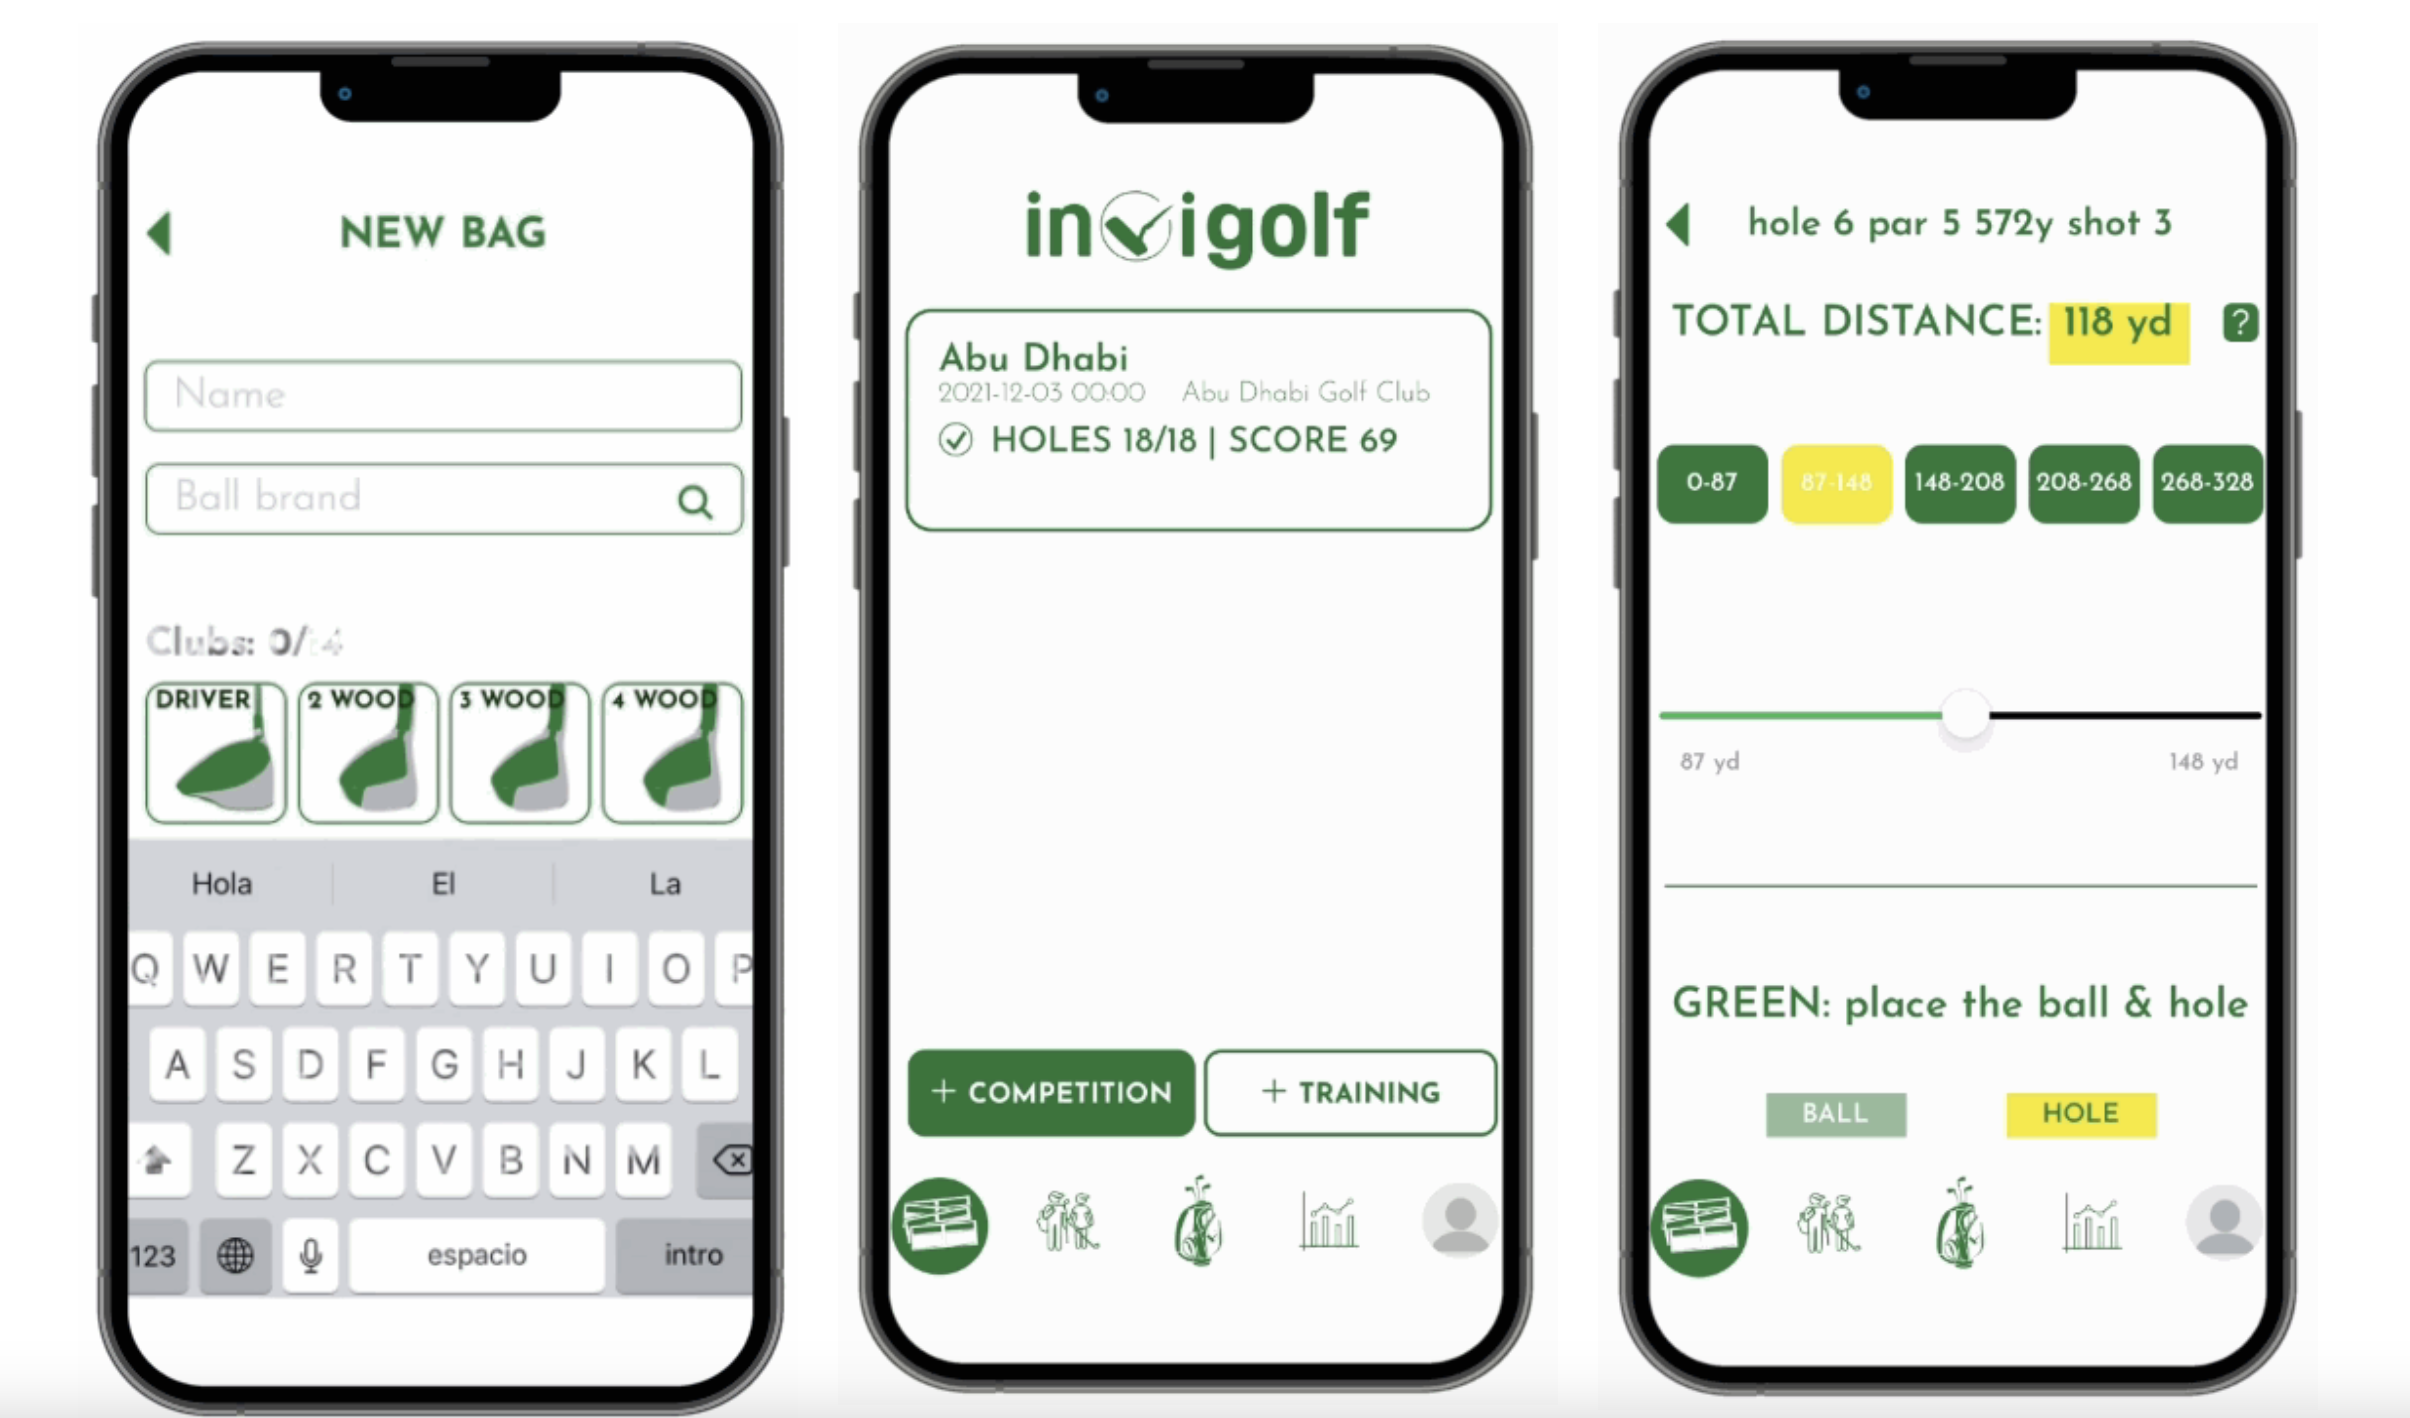 La mejor app de golf, para llevar tu score y participar en torneos.